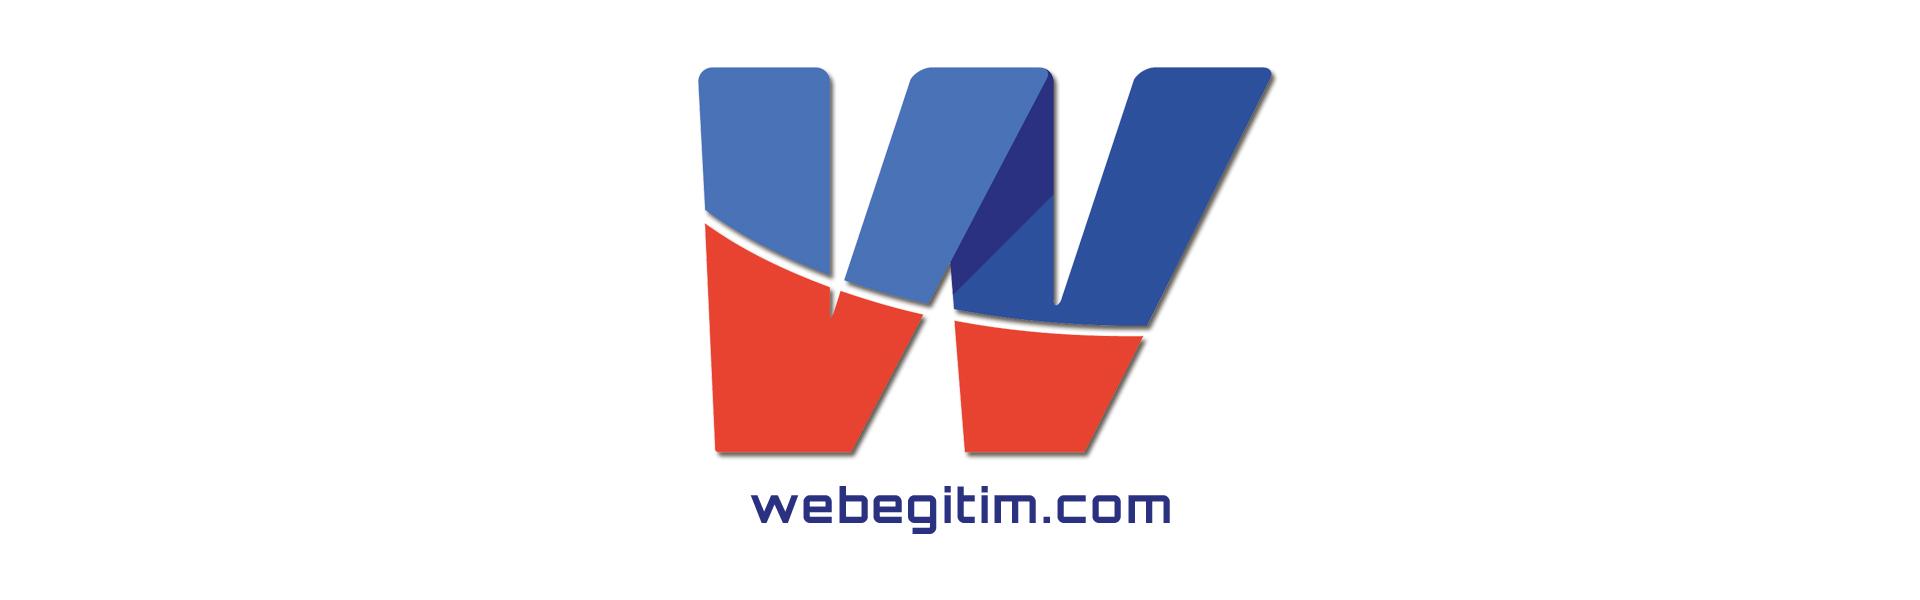 webegitim.com